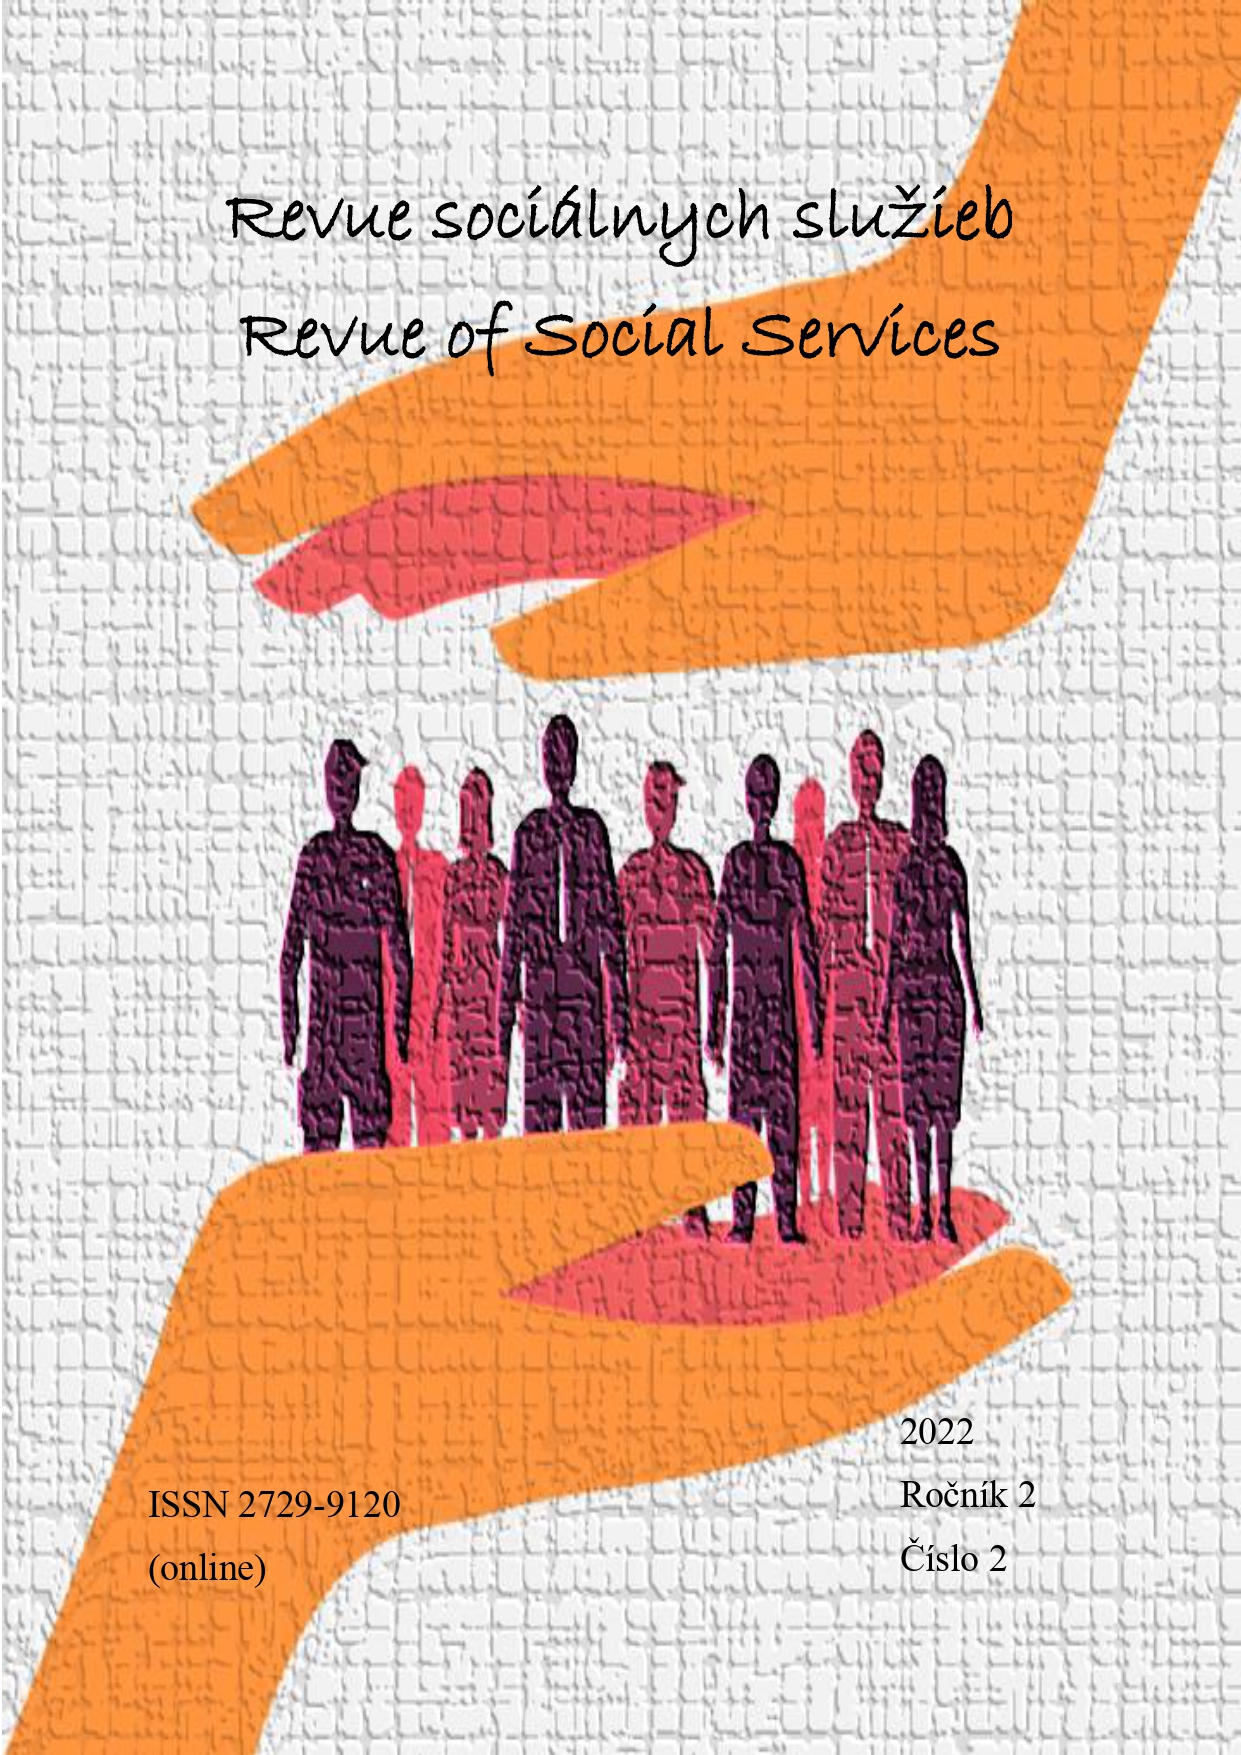 					View Vol. 2 No. 2 (2022): Revue of Social Services/Revue sociálnych služieb
				